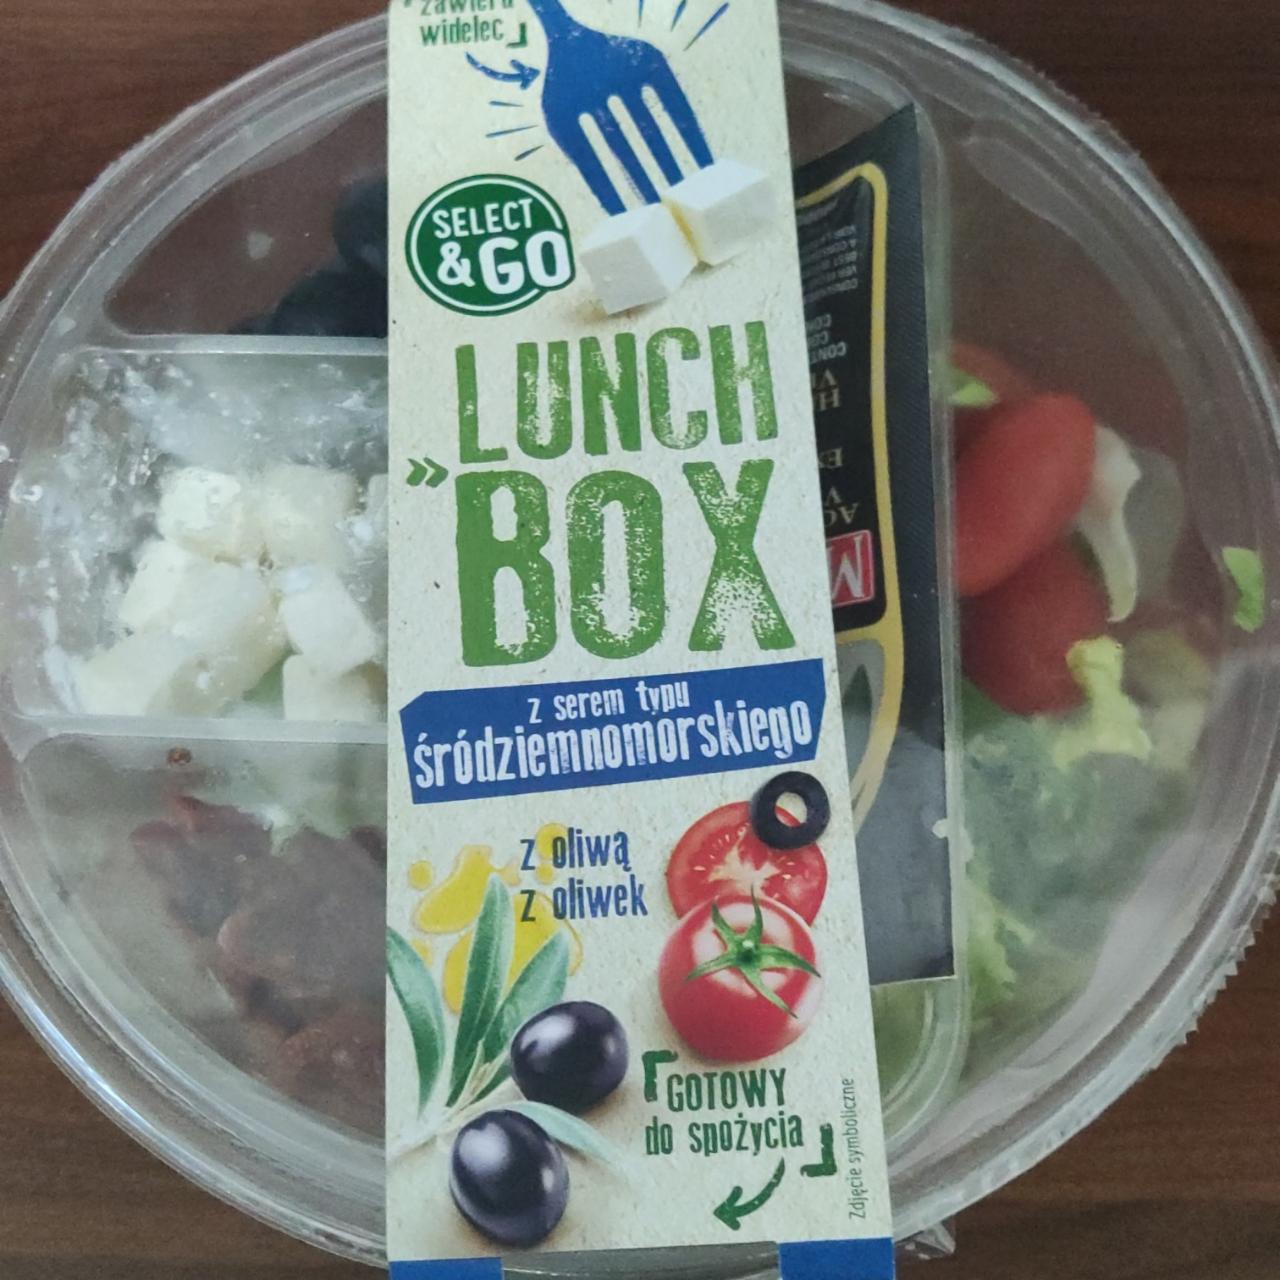 Fotografie - Lunch box z serem typu sródziemnomorskiego z oliwa Select&Go